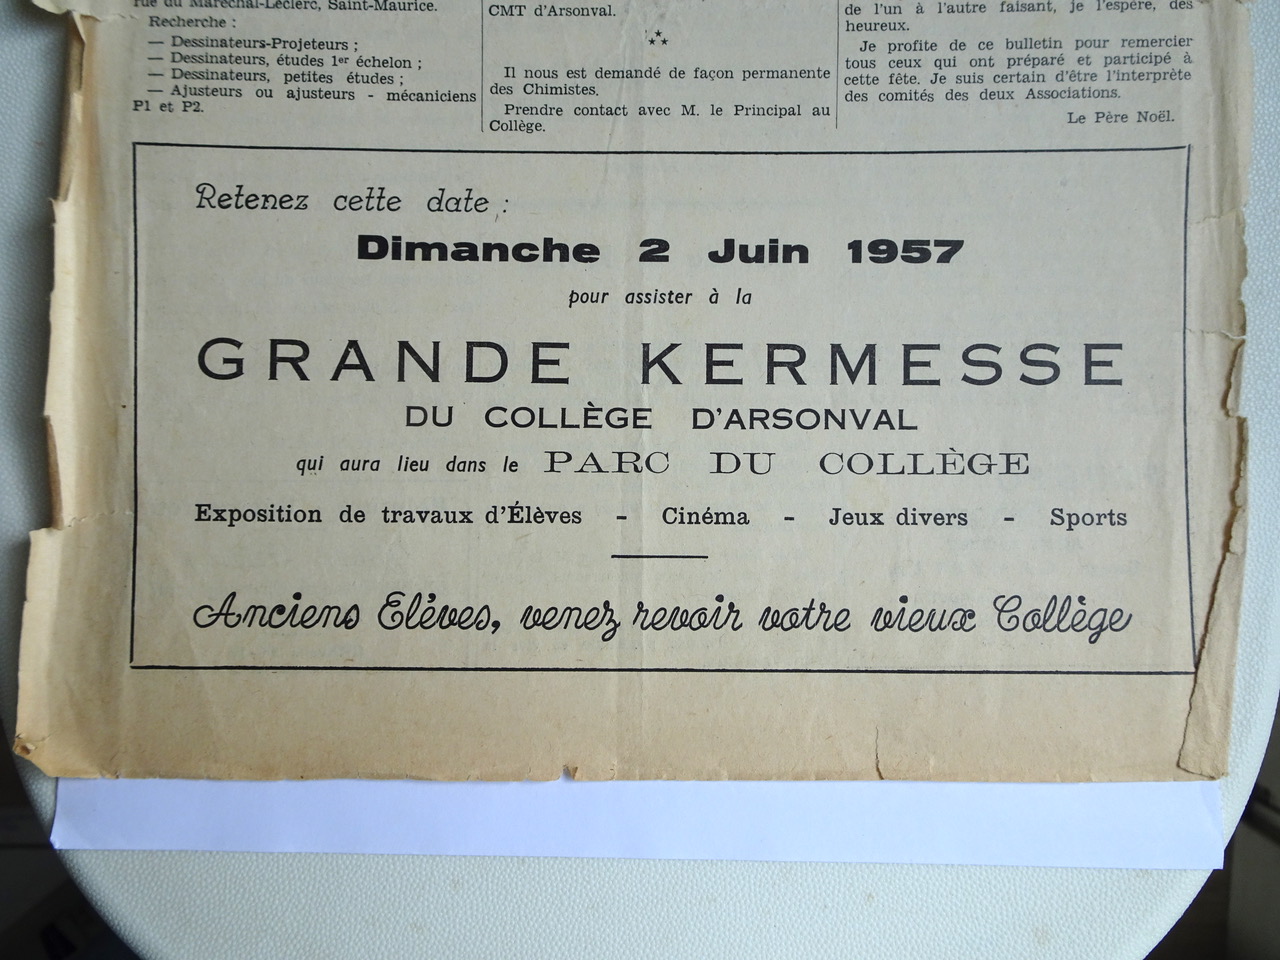 Une publicité dans le bulletin des anciens élèves pour la grande kermesse du 2 juin 1957